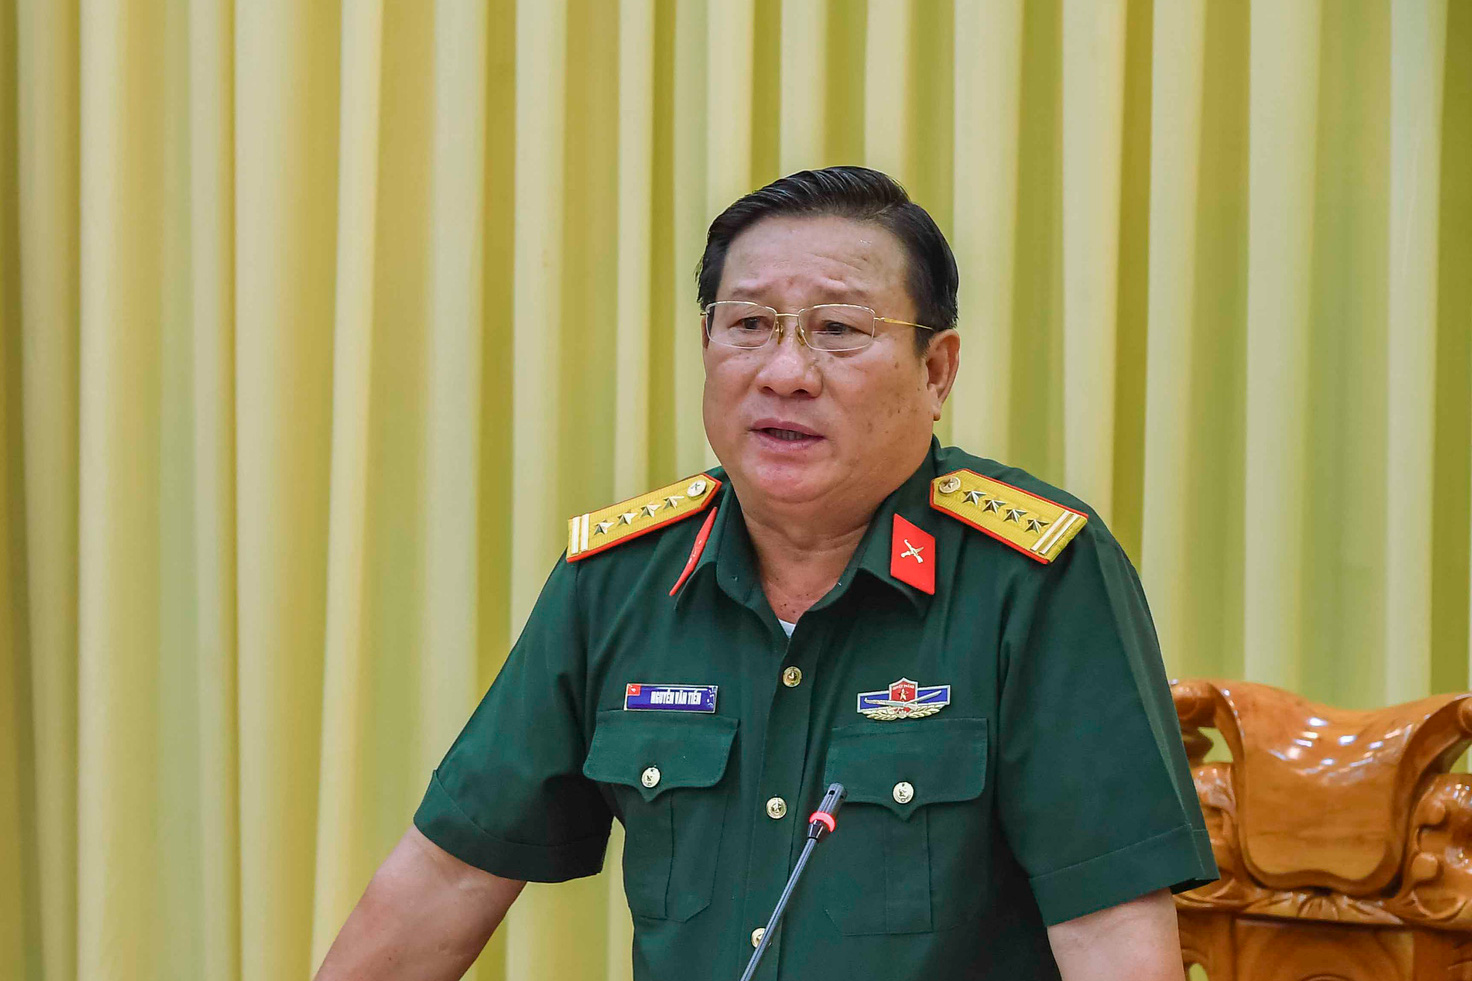 Thủ tướng bổ nhiệm Đại tá Nguyễn Văn Tiền giữ chức Phó Tư lệnh Quân khu 9